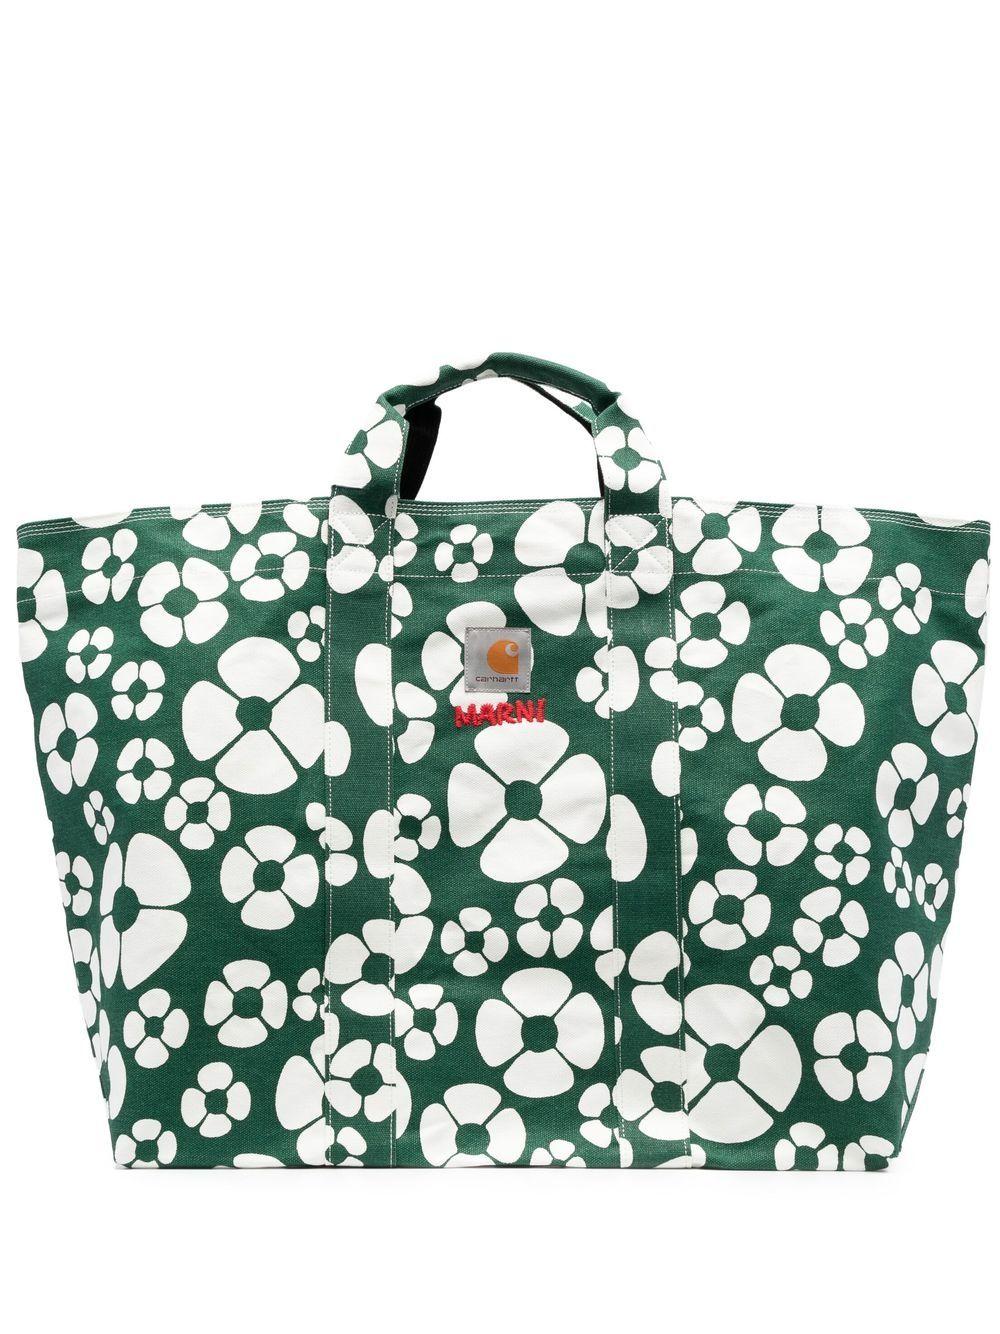 MARNI MARKET BORA medium bag in green flower motif